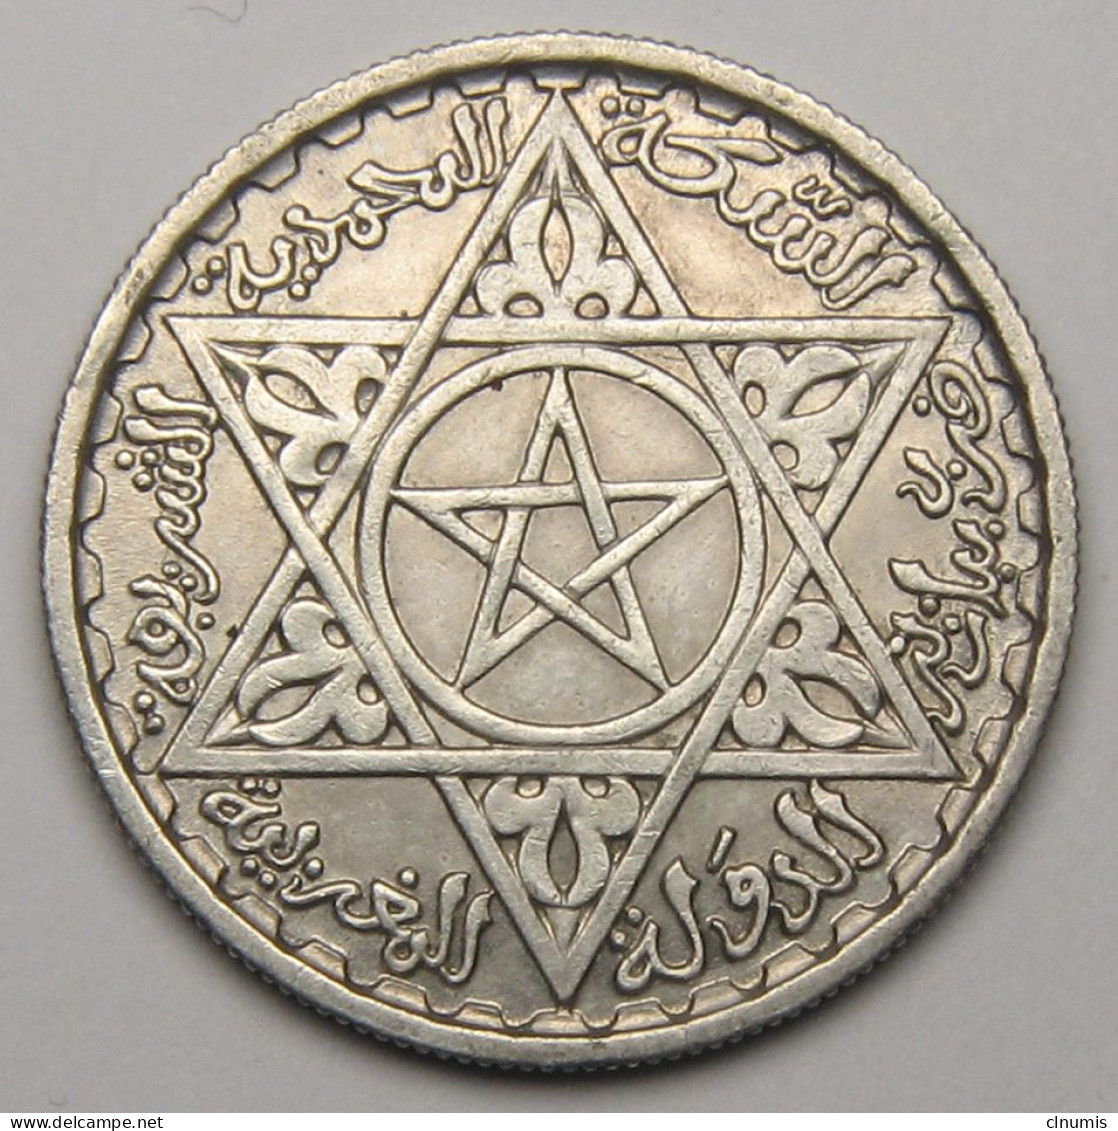 Maroc, Protectorat Français, 100 Francs 1953 (1372), Argent - Marokko